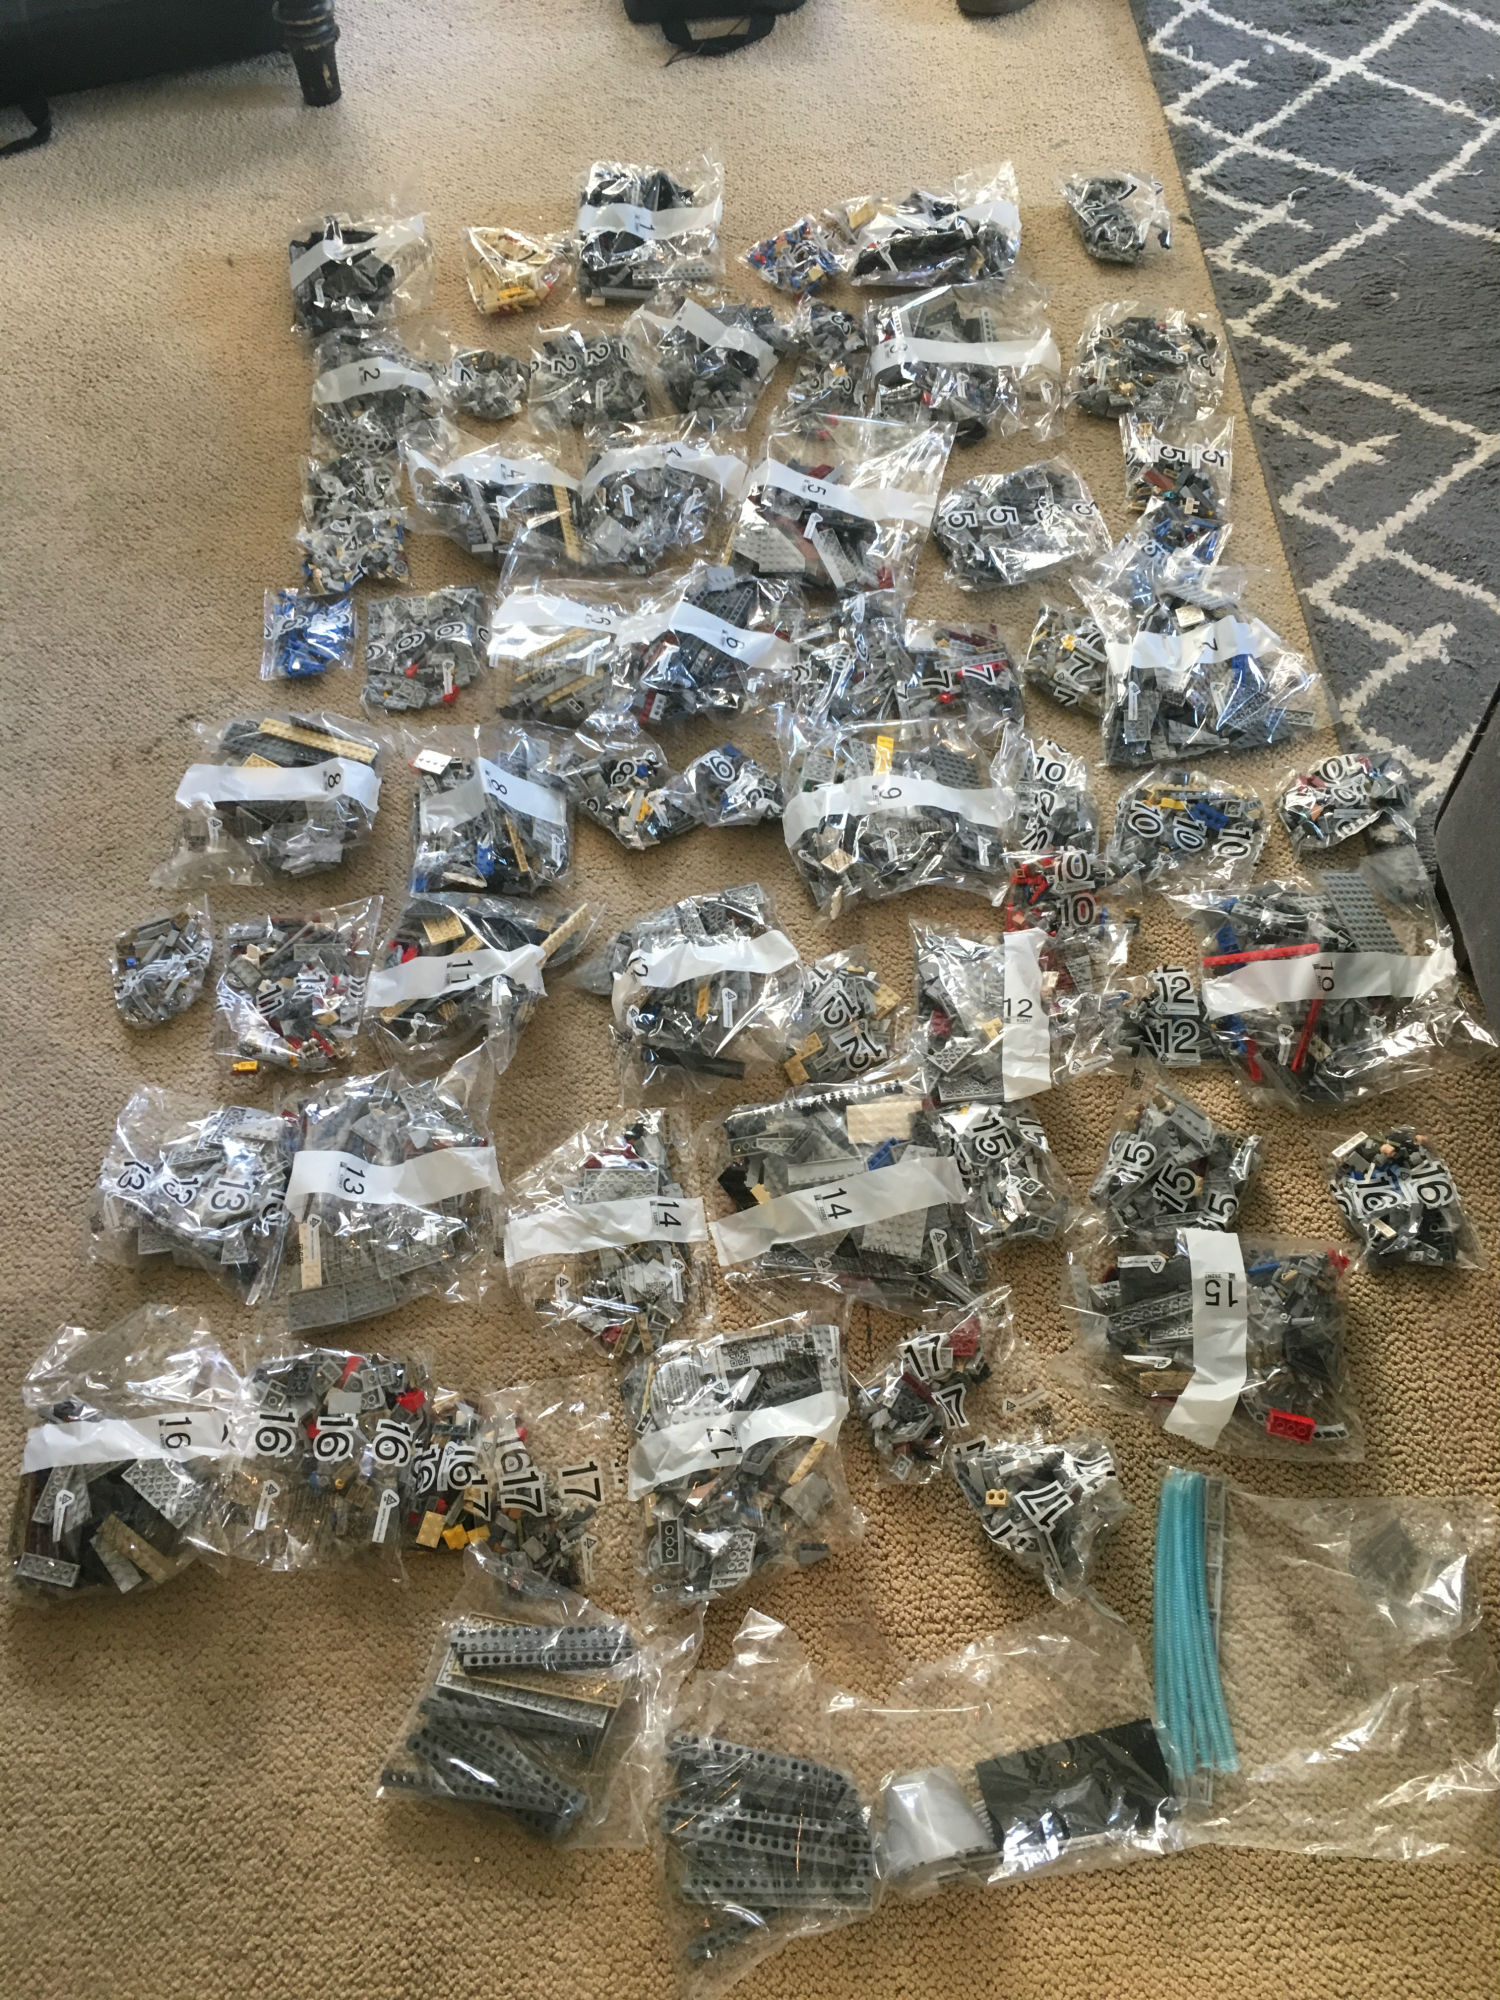 Watch Me Build LEGO’s Massive 7500-Piece Millennium Falcon